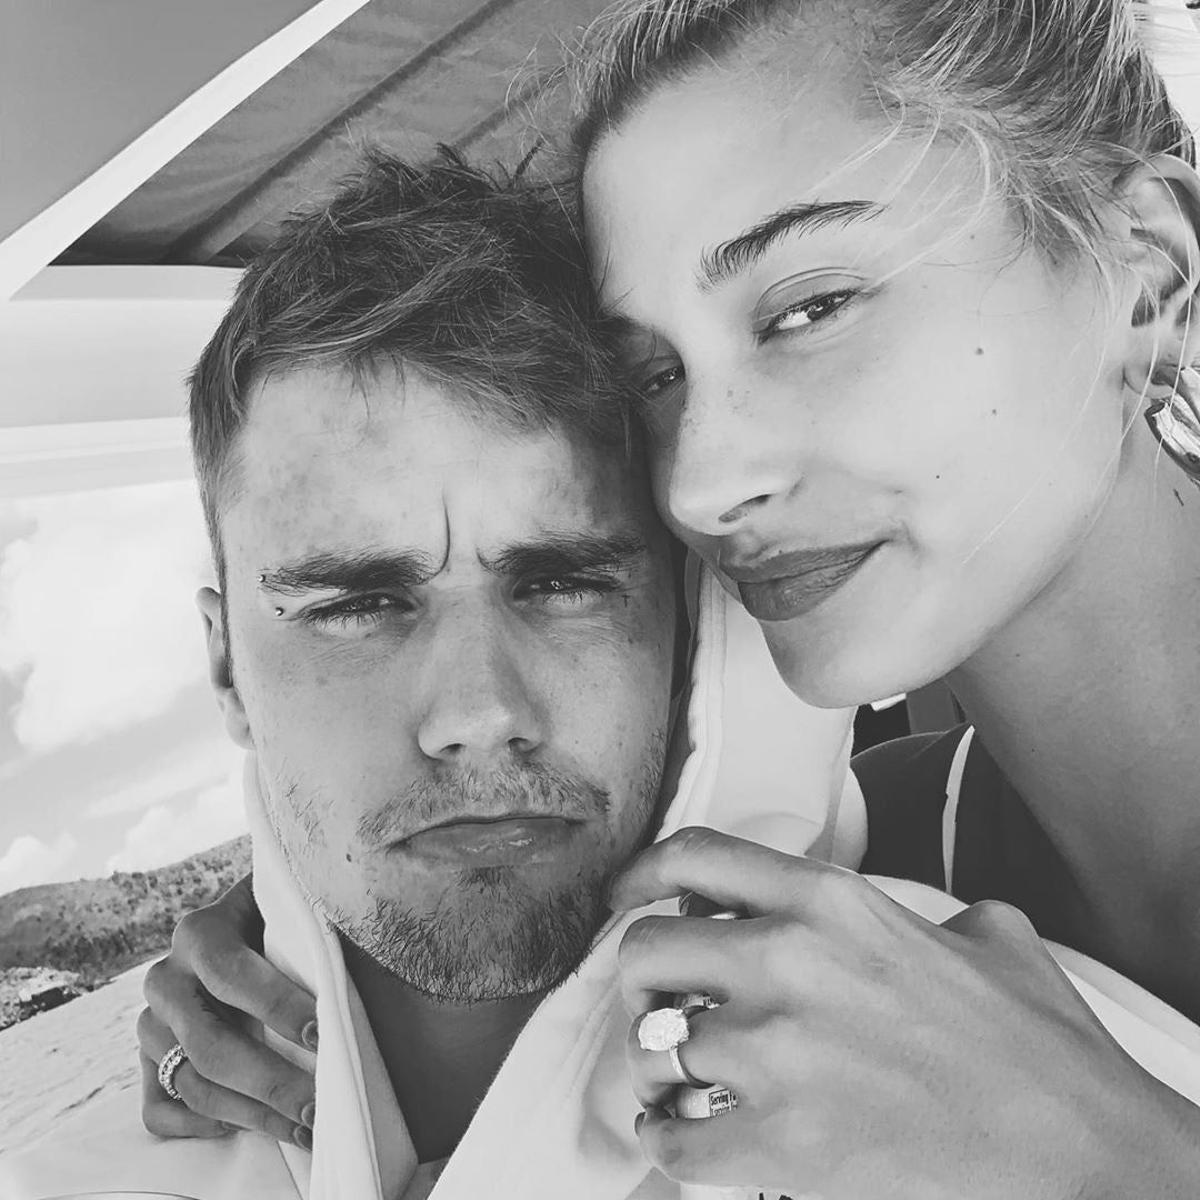 Publicación de Hailey Bieber in Instagram con su marido, Justin Bieber de vacaciones